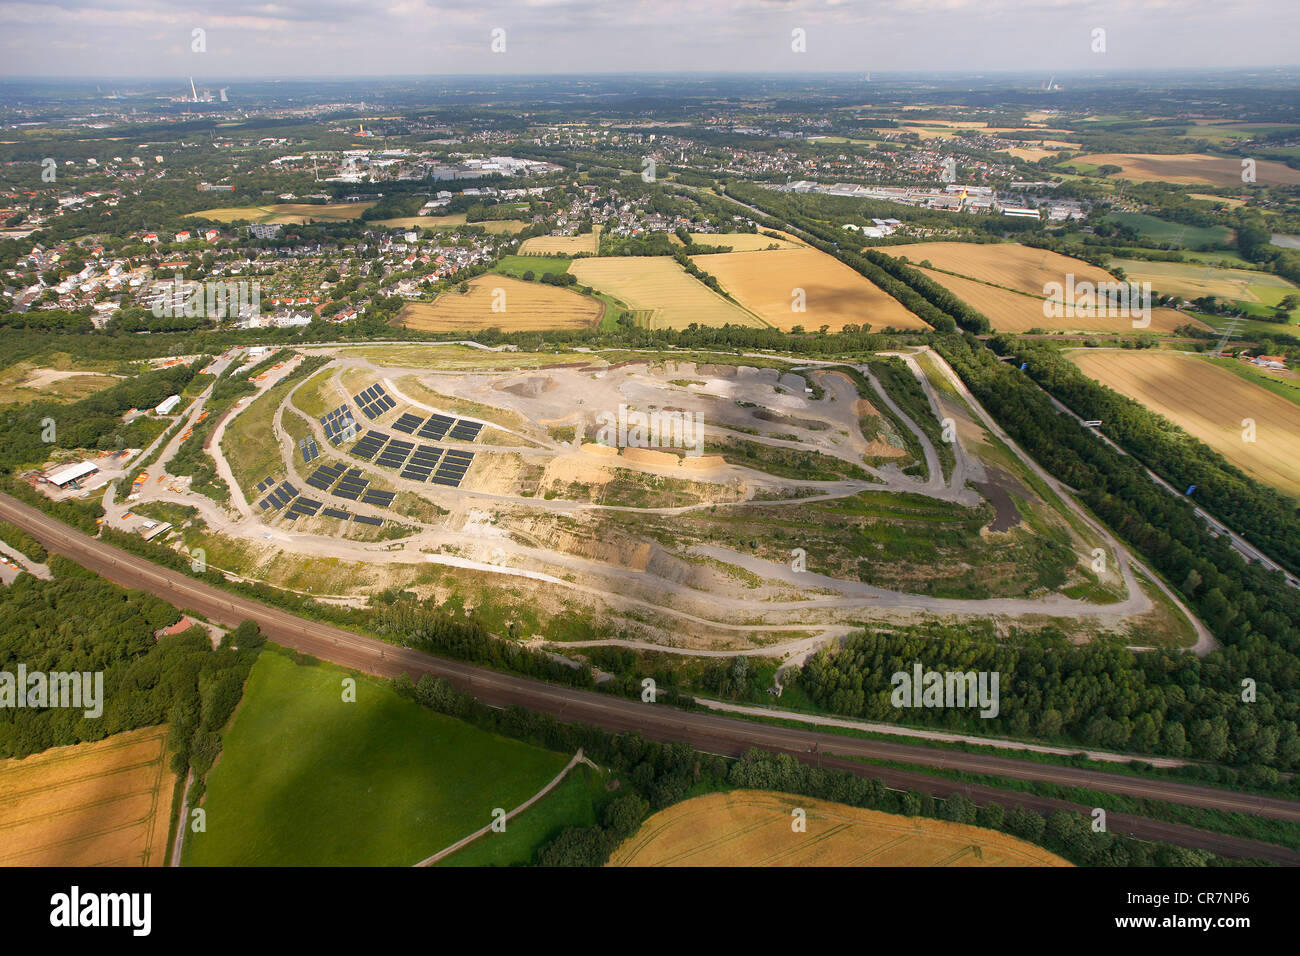 Vista aérea, Kornharpen principal sitio de eliminación de residuos con paneles solares, Bochum, área de Ruhr, Renania del Norte-Westfalia, Alemania, Europa Foto de stock